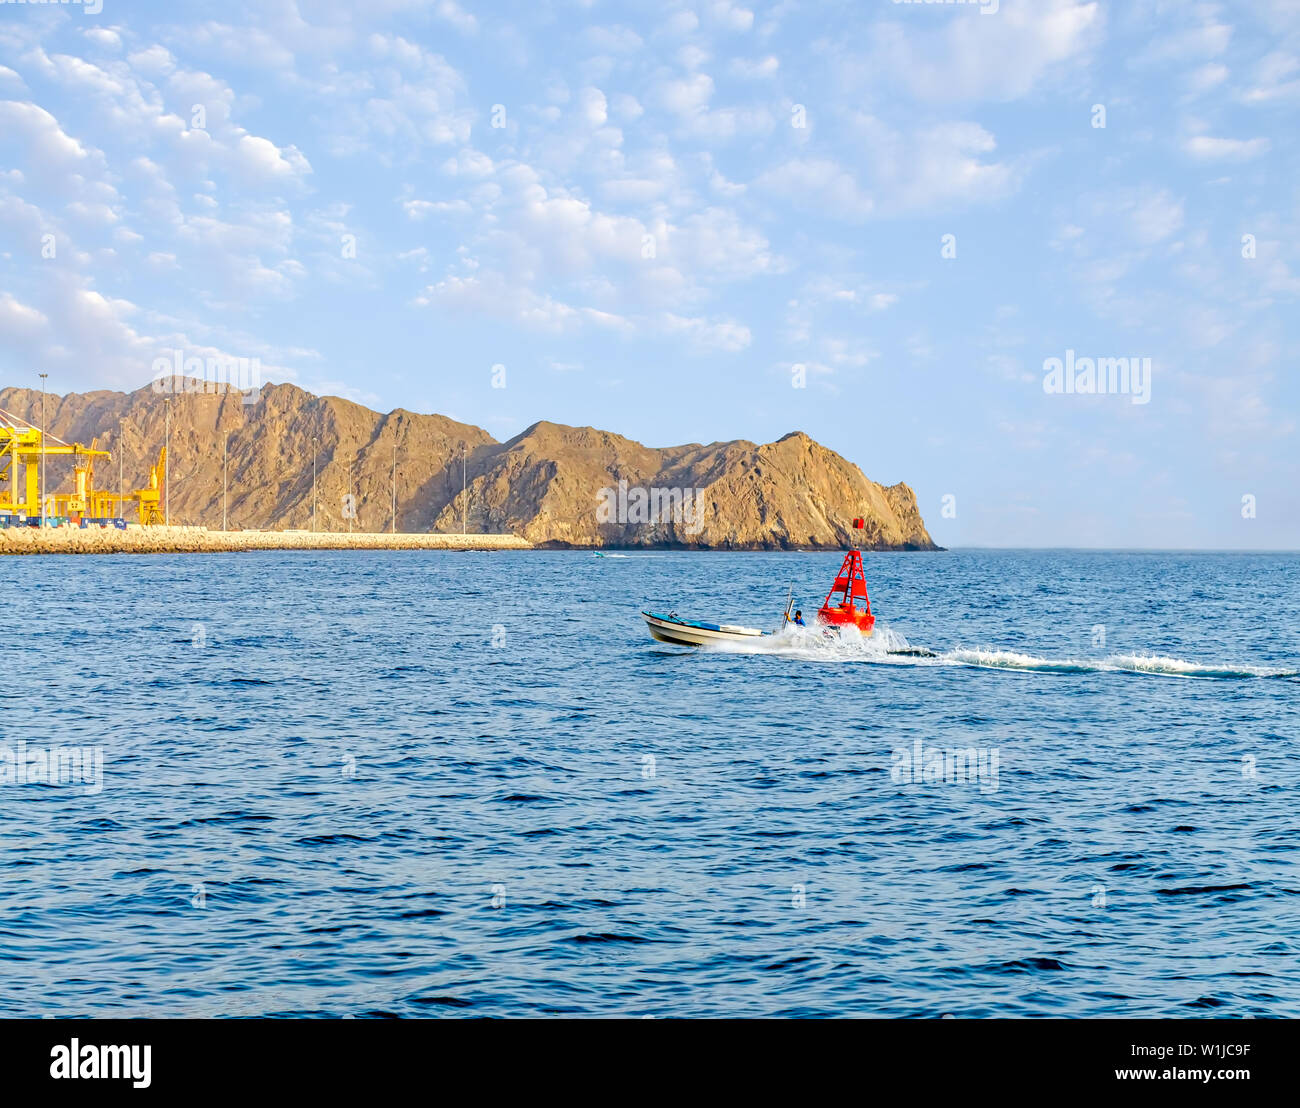 Bateau de pêche de vitesse déménagement juste à côté d'une bouée rouge près de Muttrah, Port Muscat, Oman. Banque D'Images